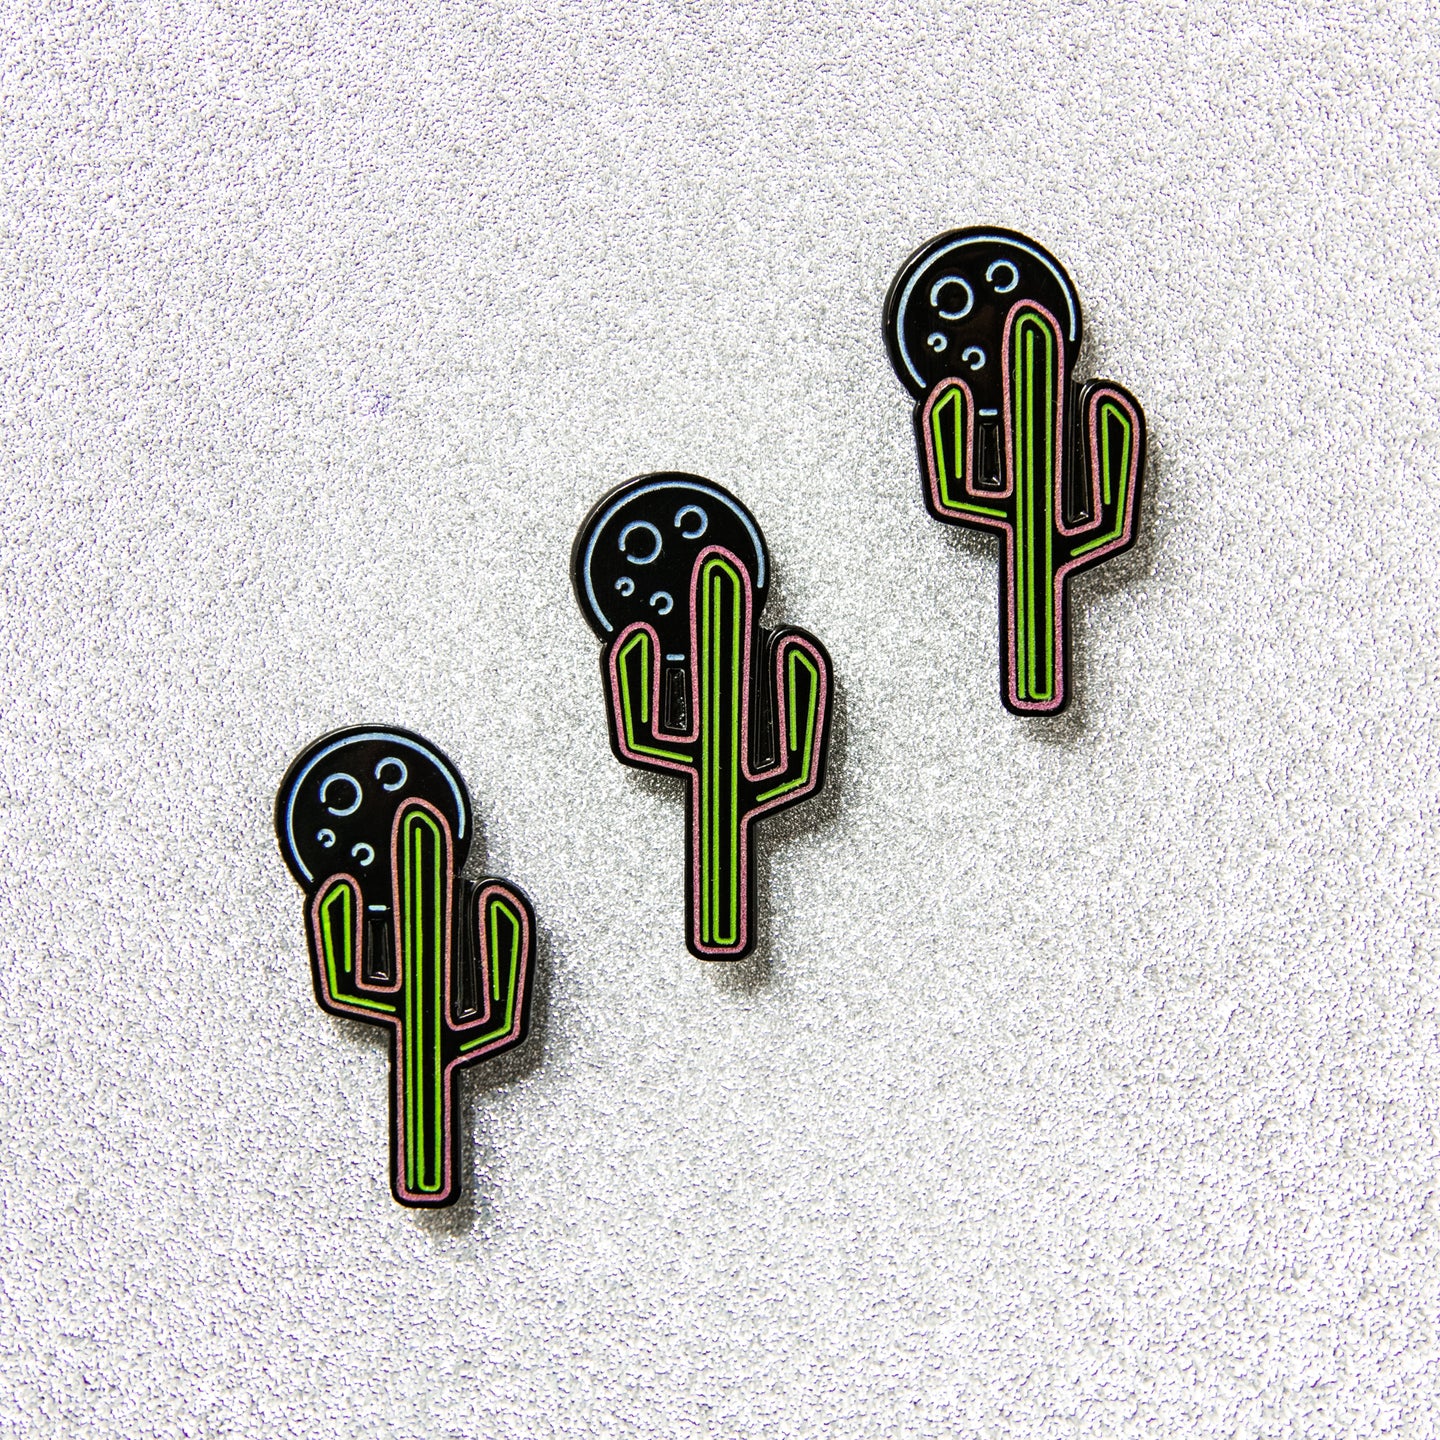 Cactus Moon Pin (glows in the dark!)